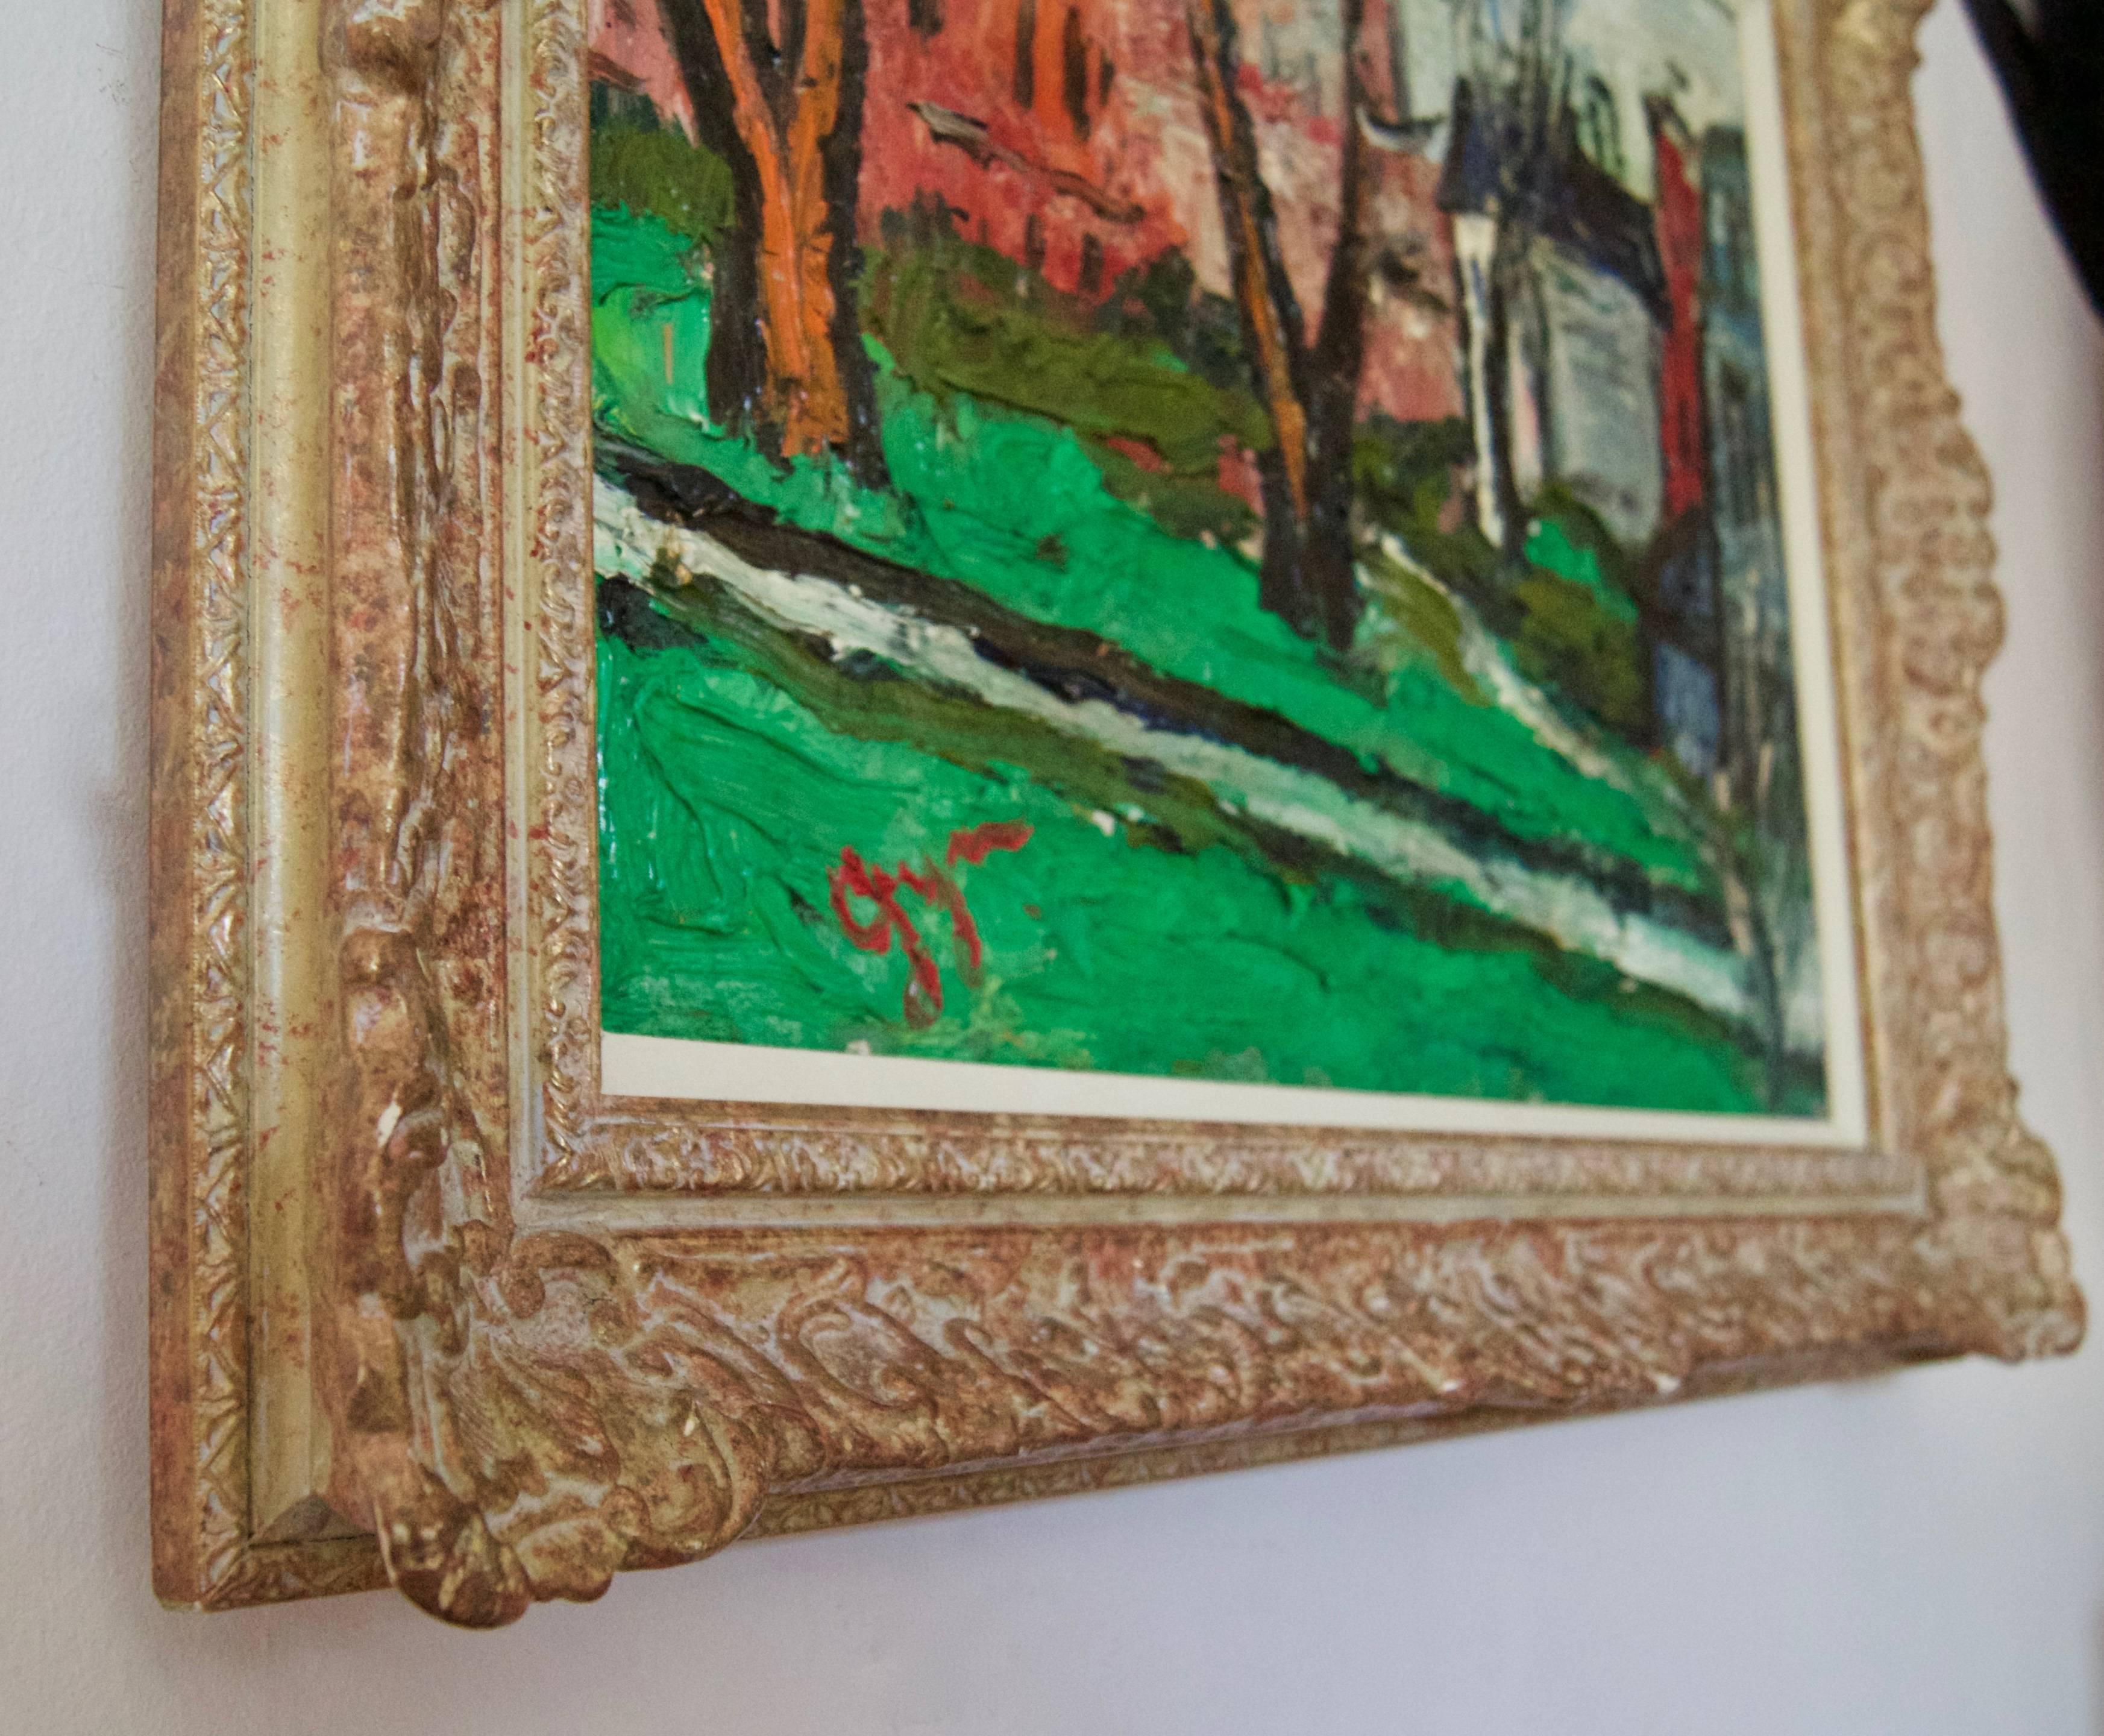 Winters Day in Kensington - Impressionistisches Ölgemälde von Gwen Collins, frühes 20. Jahrhundert (Impressionismus), Painting, von Gwendolyn Collins